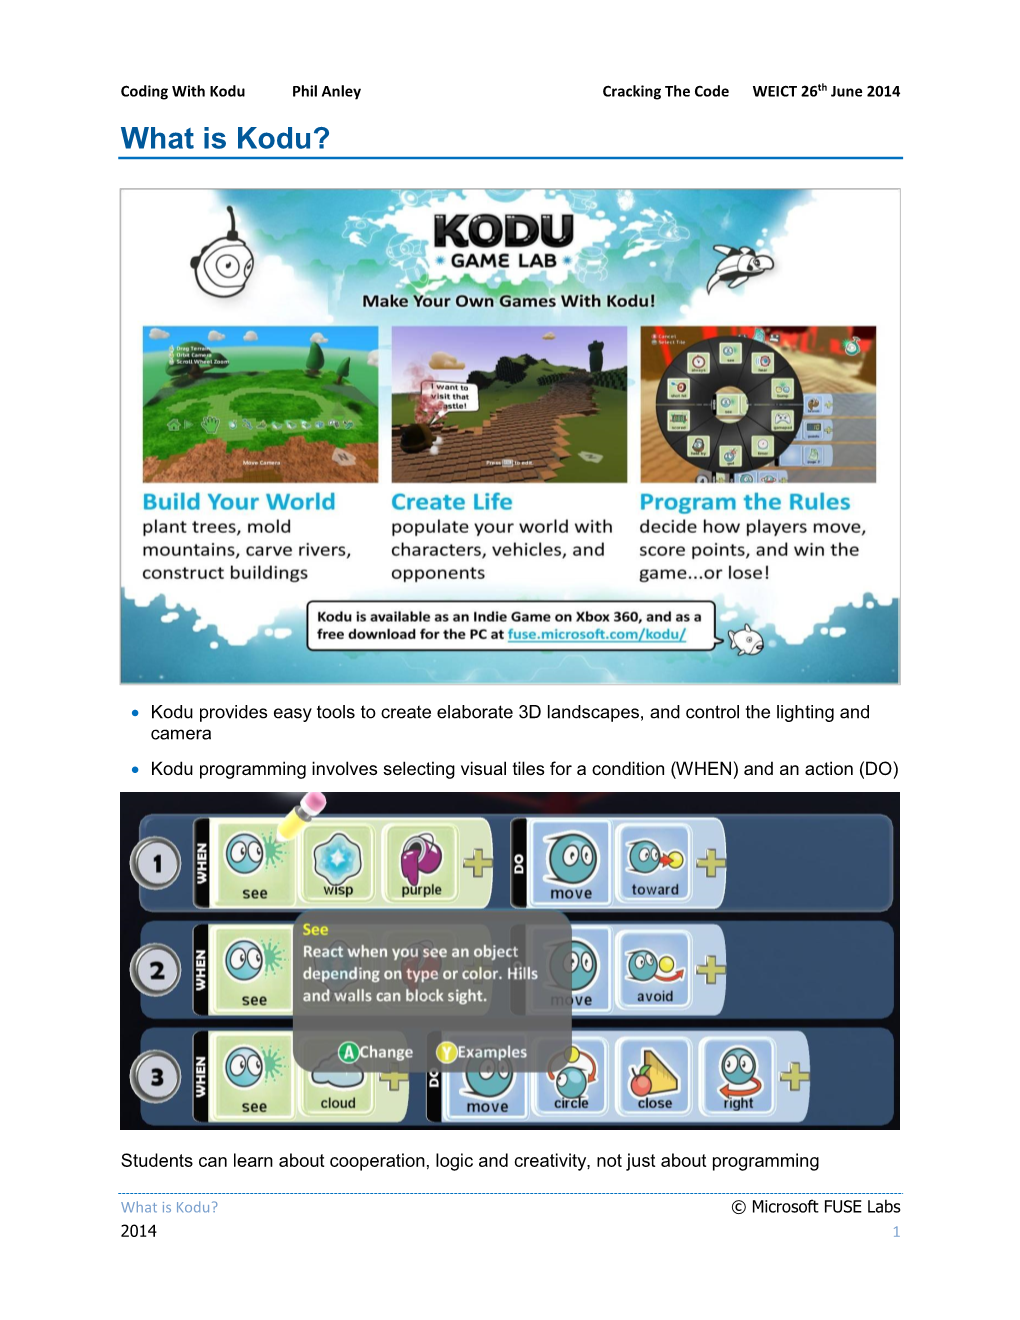 What Is Kodu?